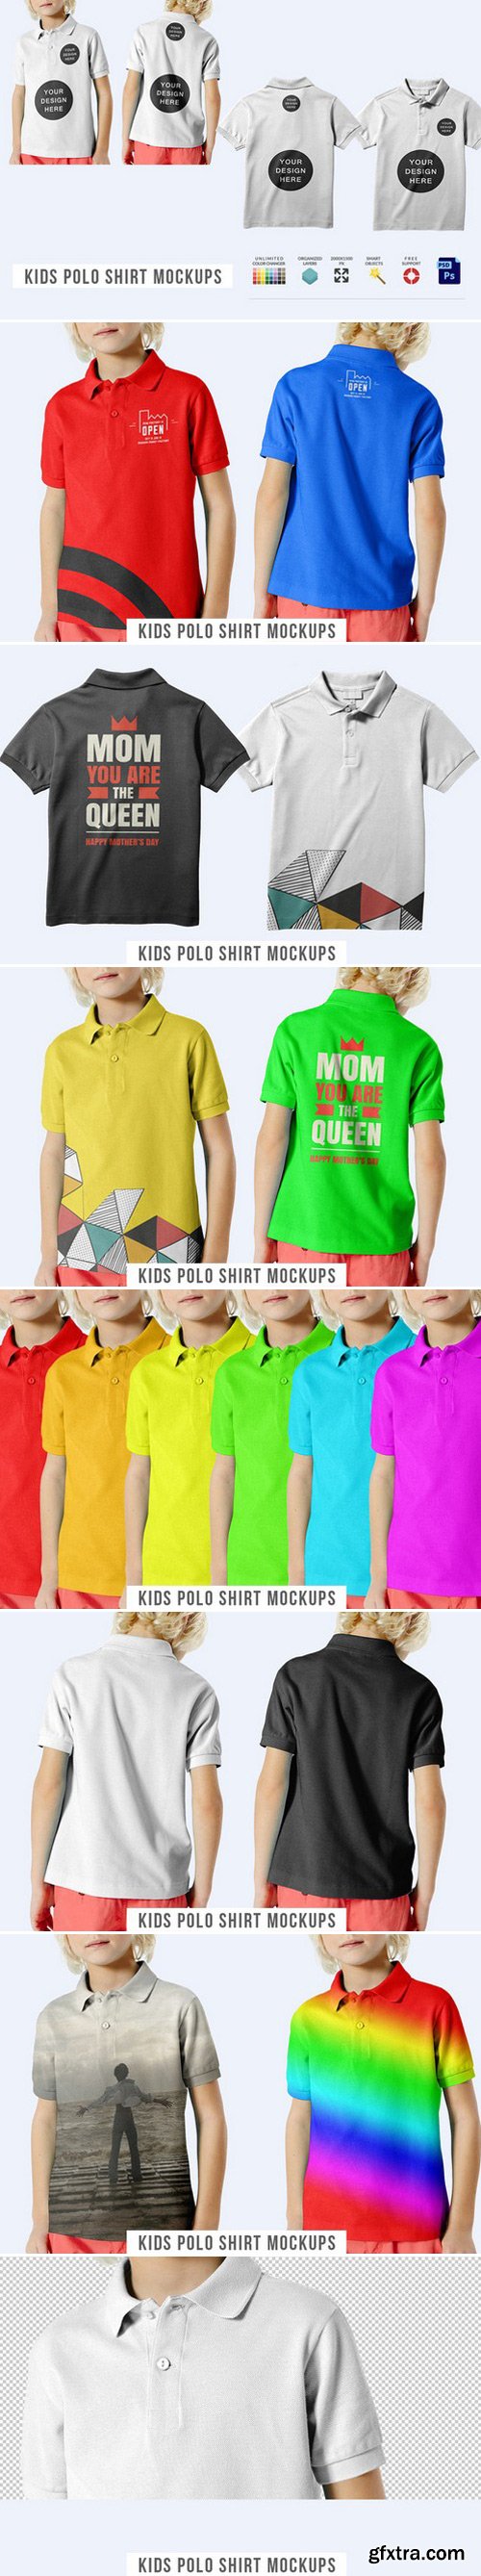 CM - Kids Polo Shirt Mockups 460733